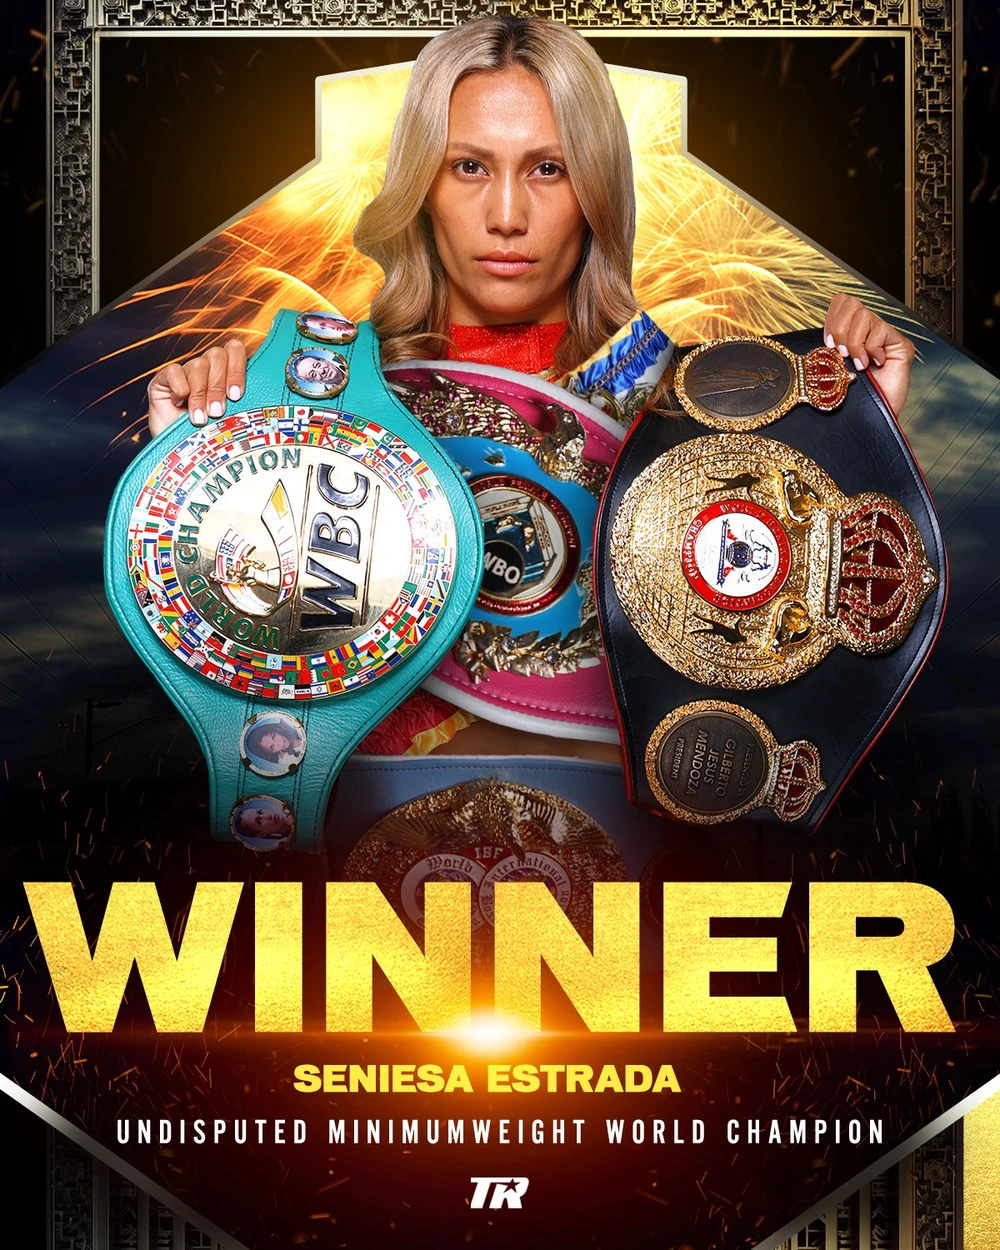 Seniesa sở hữu cả 4 đai vô địch hạng cân nhẹ nhất là WBA, WBC, IBF và WBO